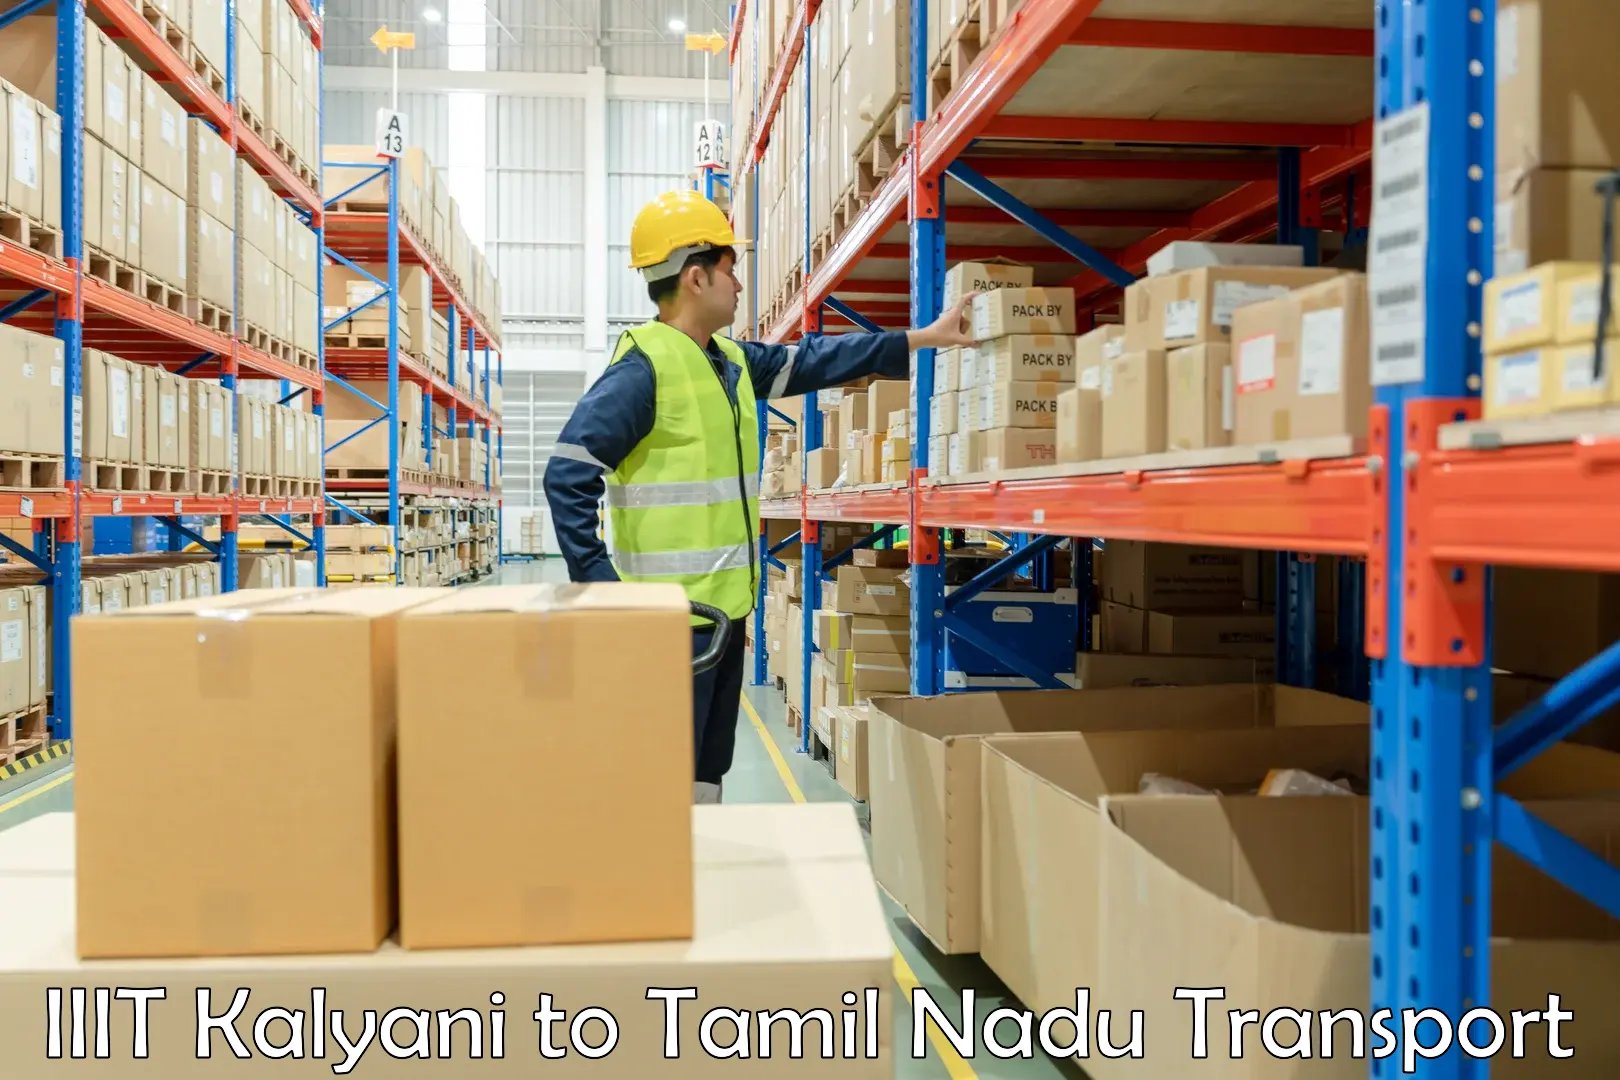 Air cargo transport services IIIT Kalyani to Tiruvannamalai